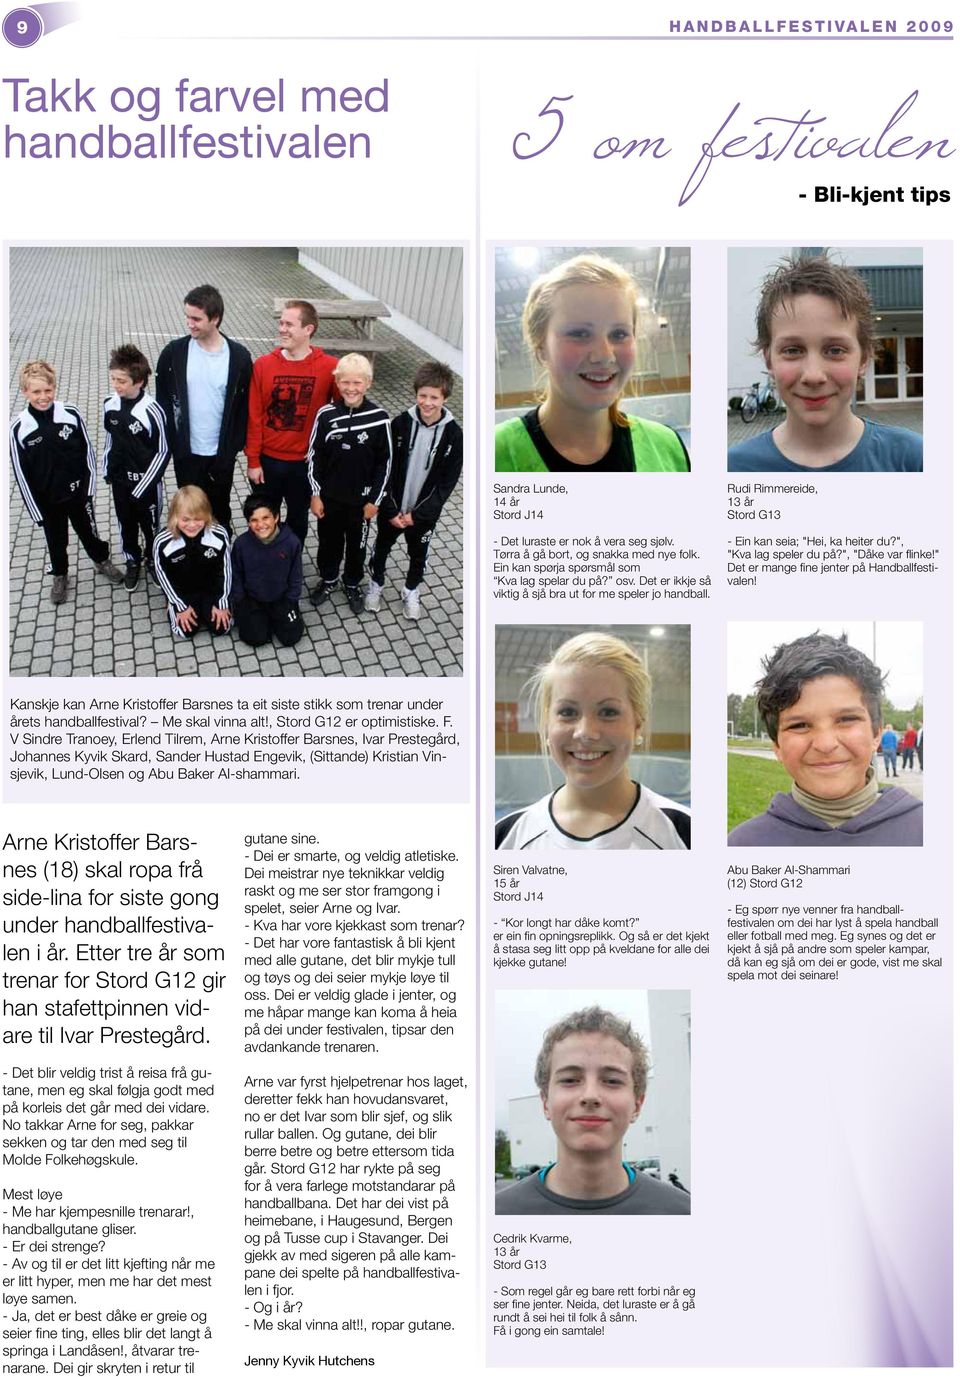 Rudi Rimmereide, 13 år Stord G13 - Ein kan seia; "Hei, ka heiter du?", "Kva lag speler du på?", "Dåke var flinke!" Det er mange fine jenter på Handballfestivalen!